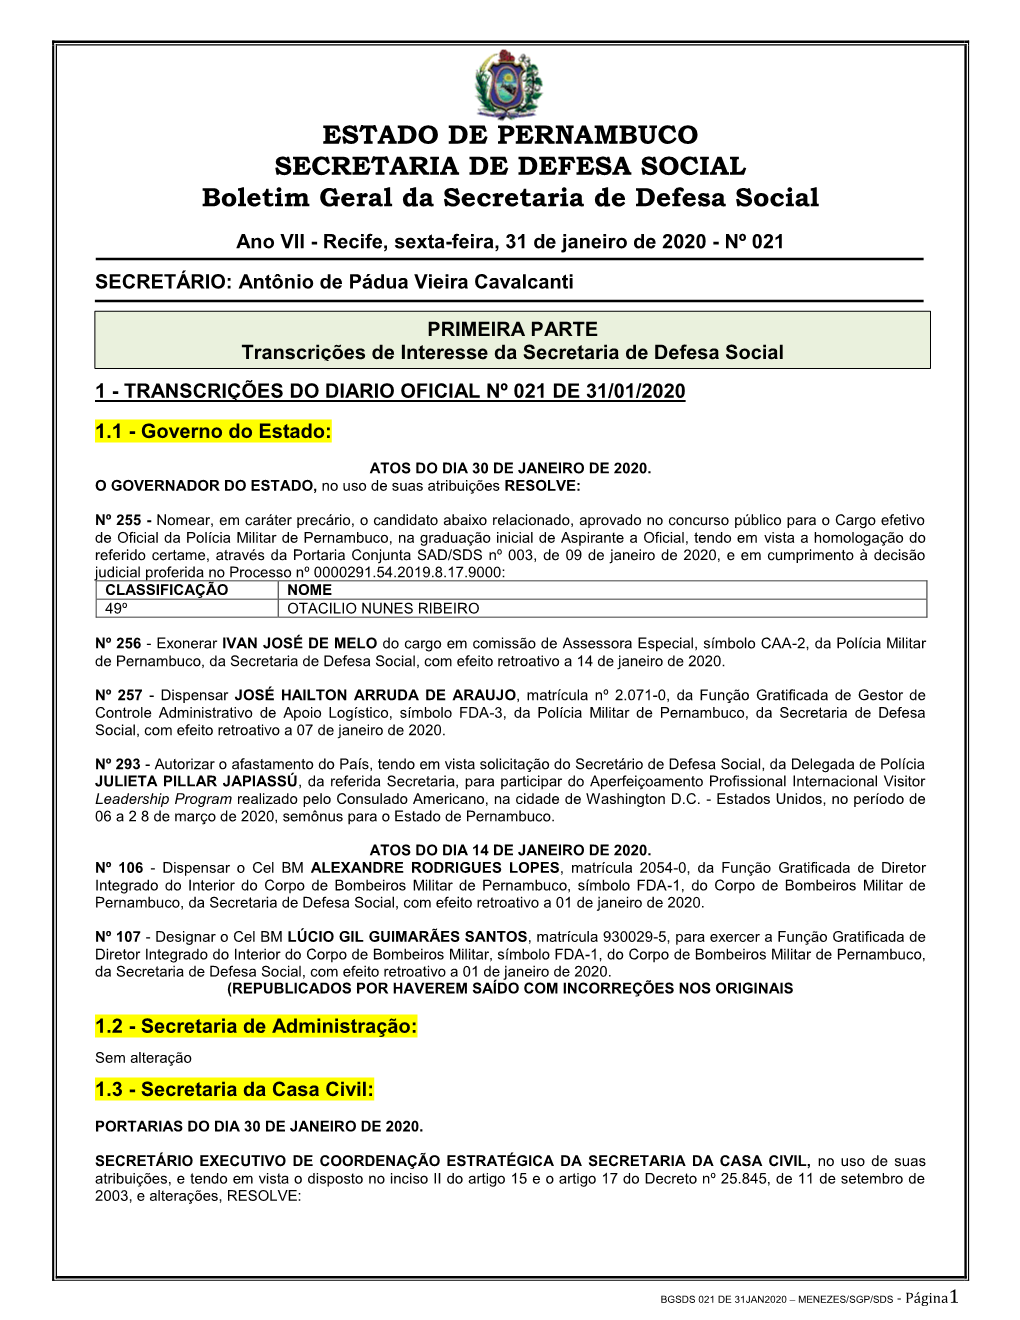 ESTADO DE PERNAMBUCO SECRETARIA DE DEFESA SOCIAL Boletim Geral Da Secretaria De Defesa Social